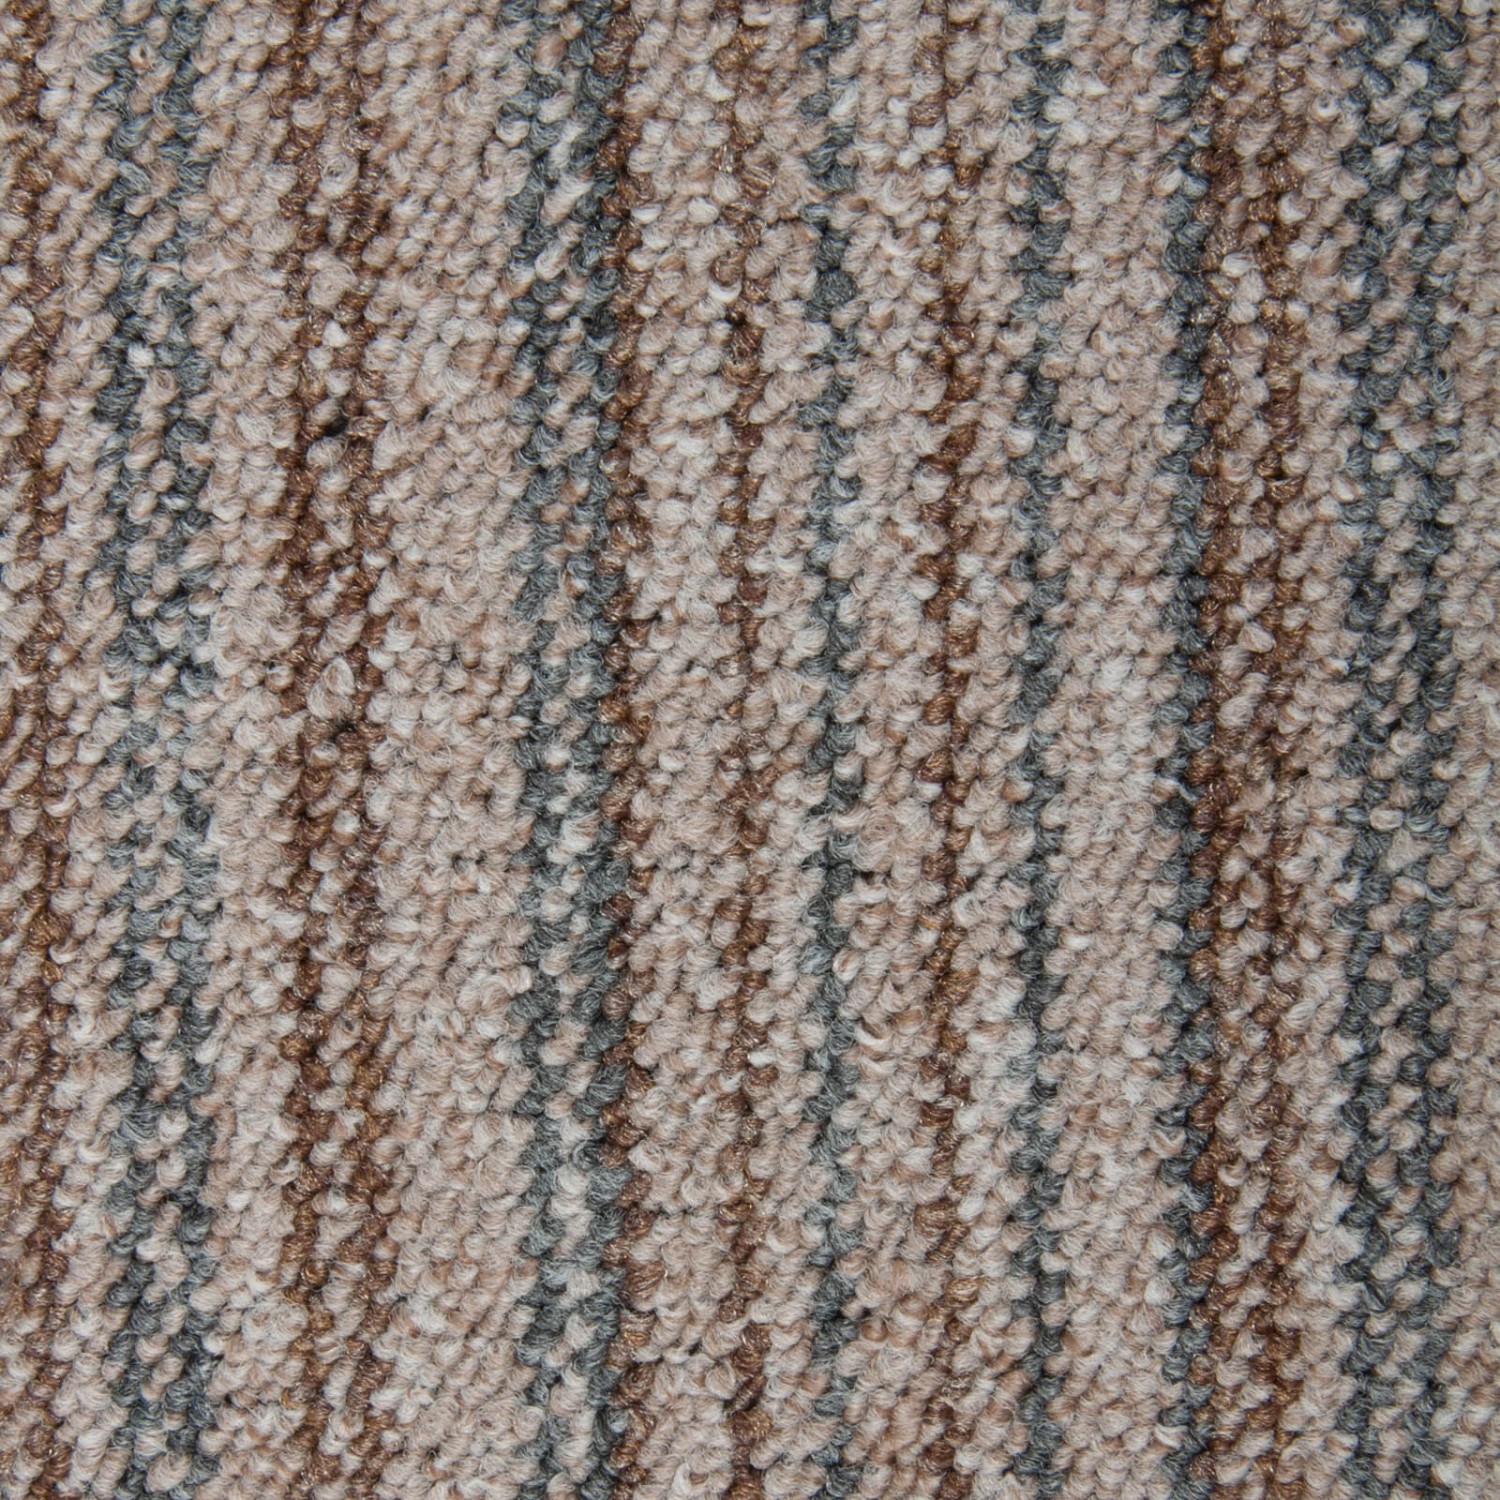 Schatex Teppichdielen Selbstliegend Schlingen Teppich Fliesen Mit Streifen In Grau Beige Selbstliegende Teppichfliesen 25x100 Cm Ideal Für Büro von Schatex